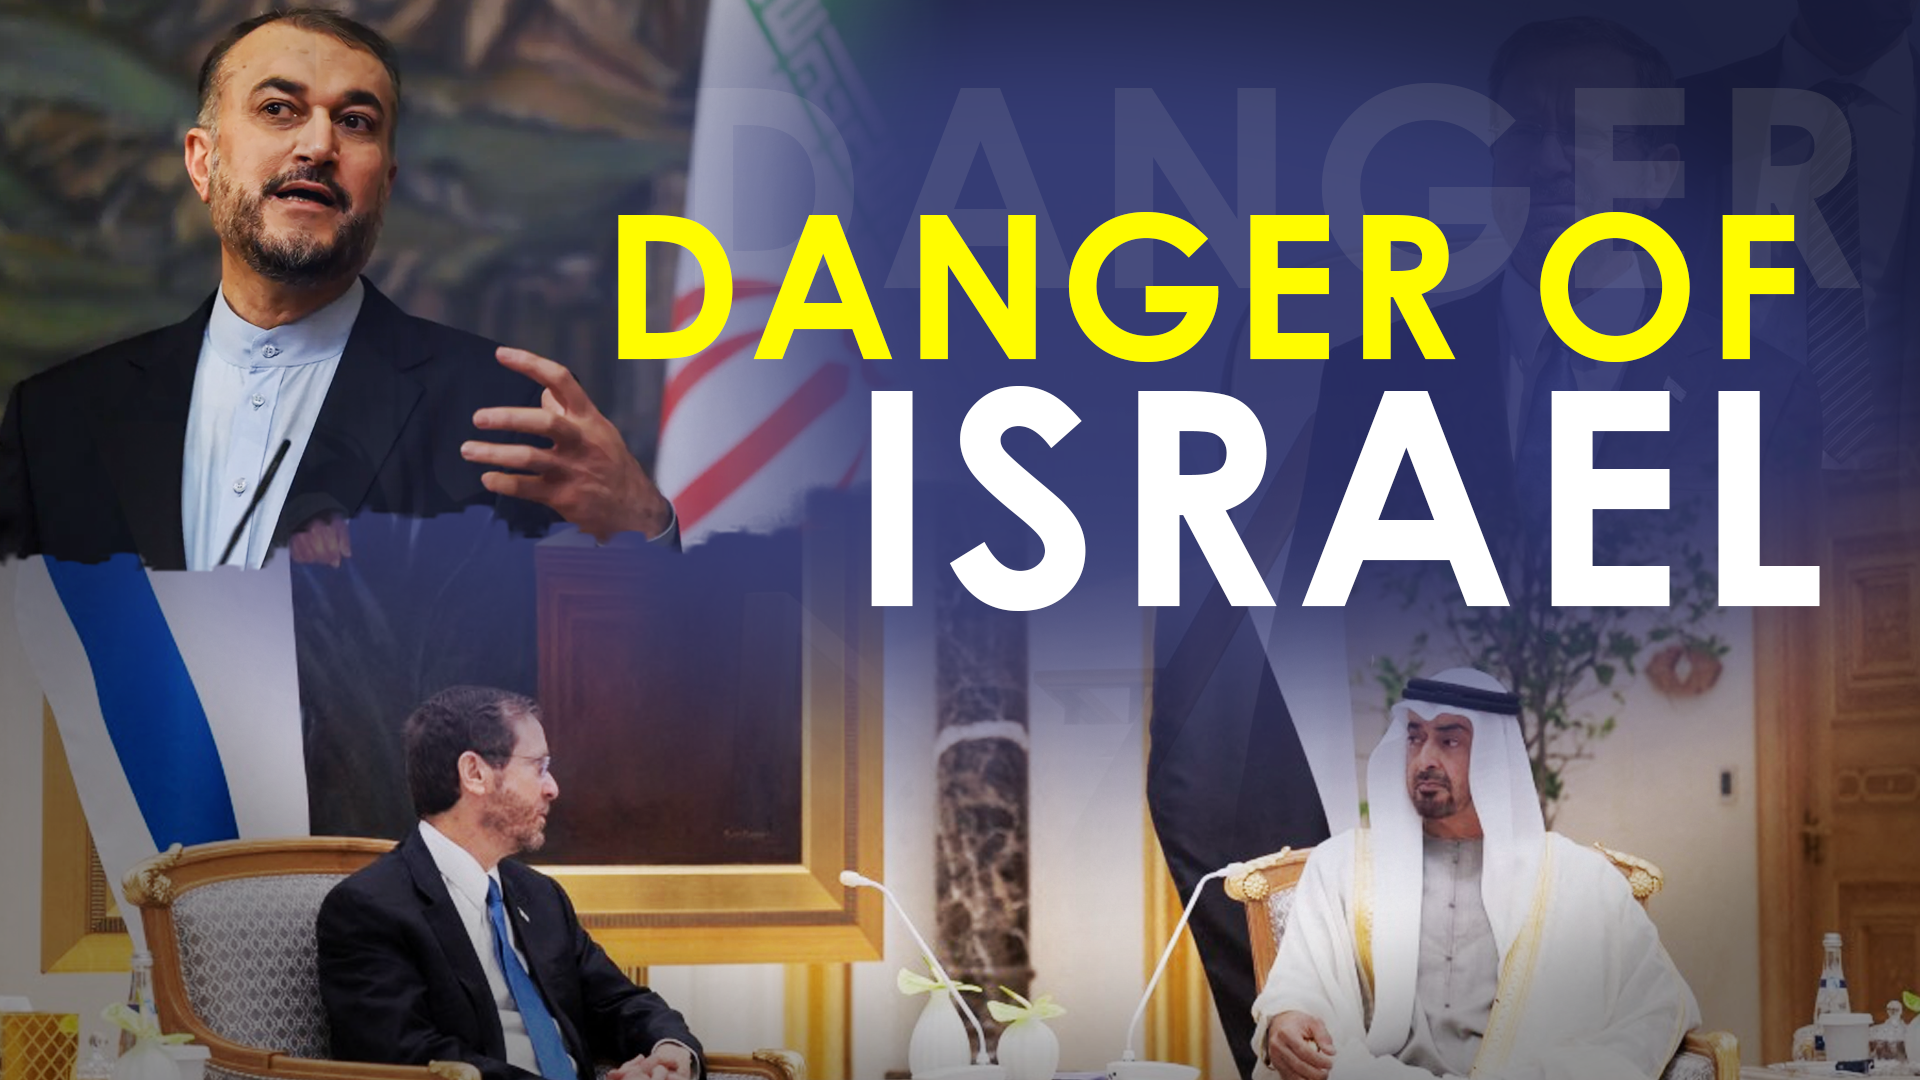 Israel threat